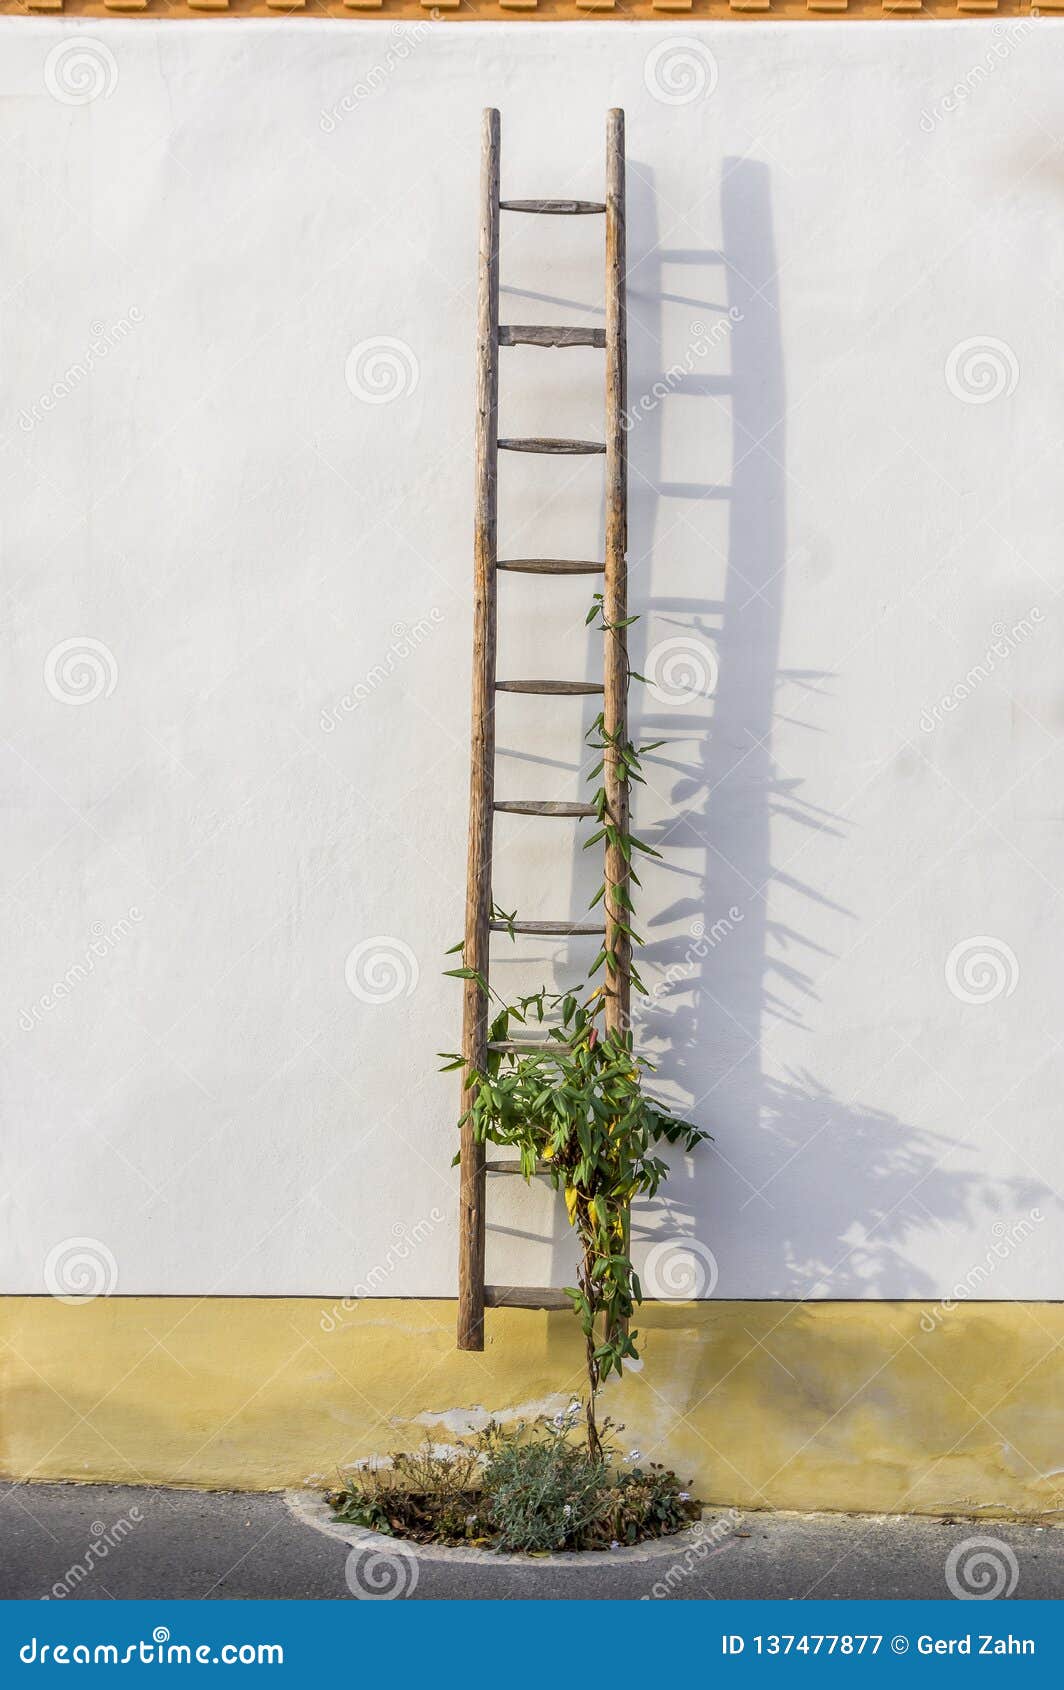 Oude Houten Ladder En Bloemen Als Decoratie Op De Voorgevel Van Een Hersteld Helft Betimmerd Gedeeltelijk Gepleisterd Huis Stock Afbeelding Image Of Schilderachtig Frame 137477877